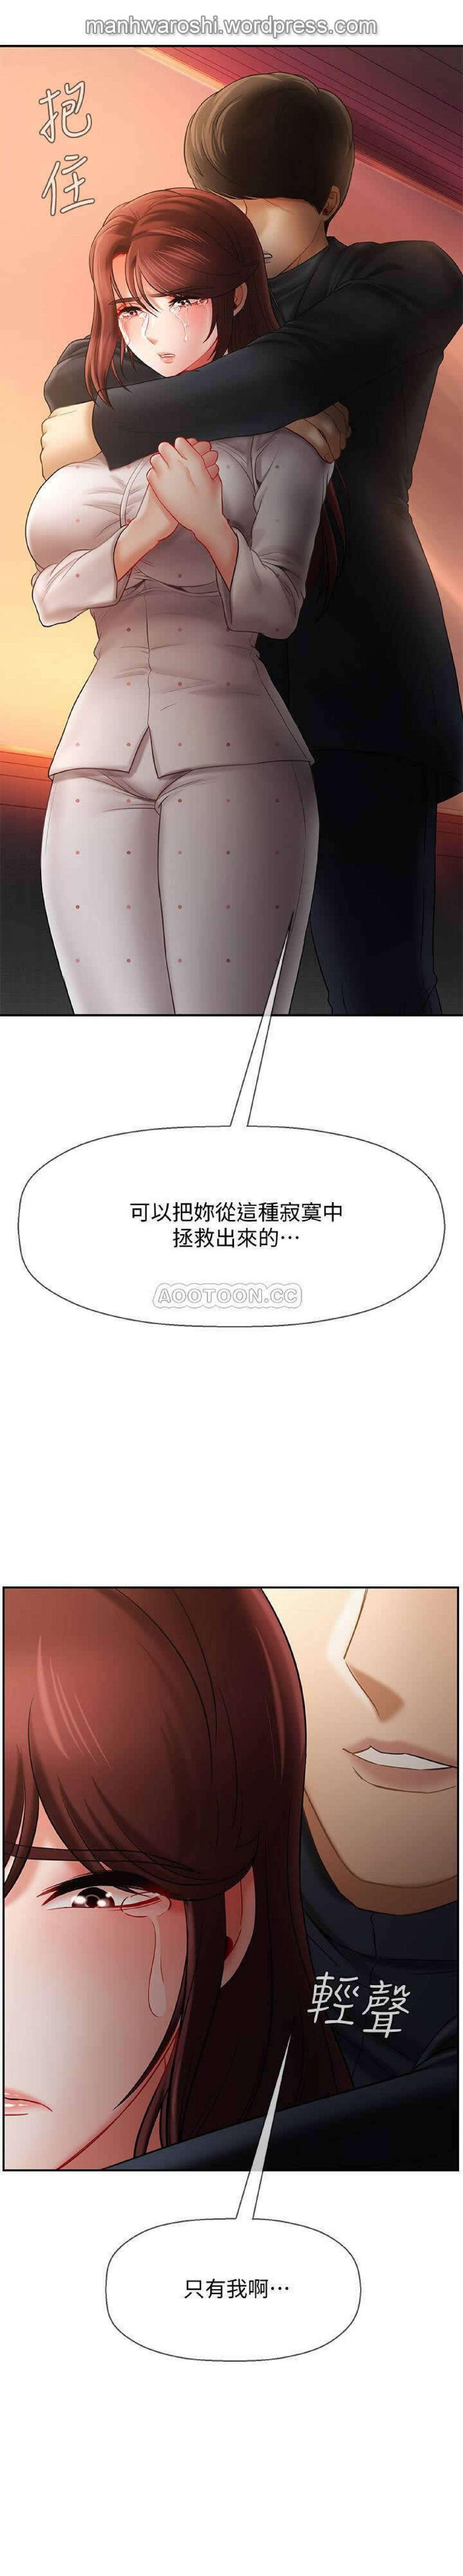 坏老师 | PHYSICAL CLASSROOM 12 [Chinese] Manhwa 43